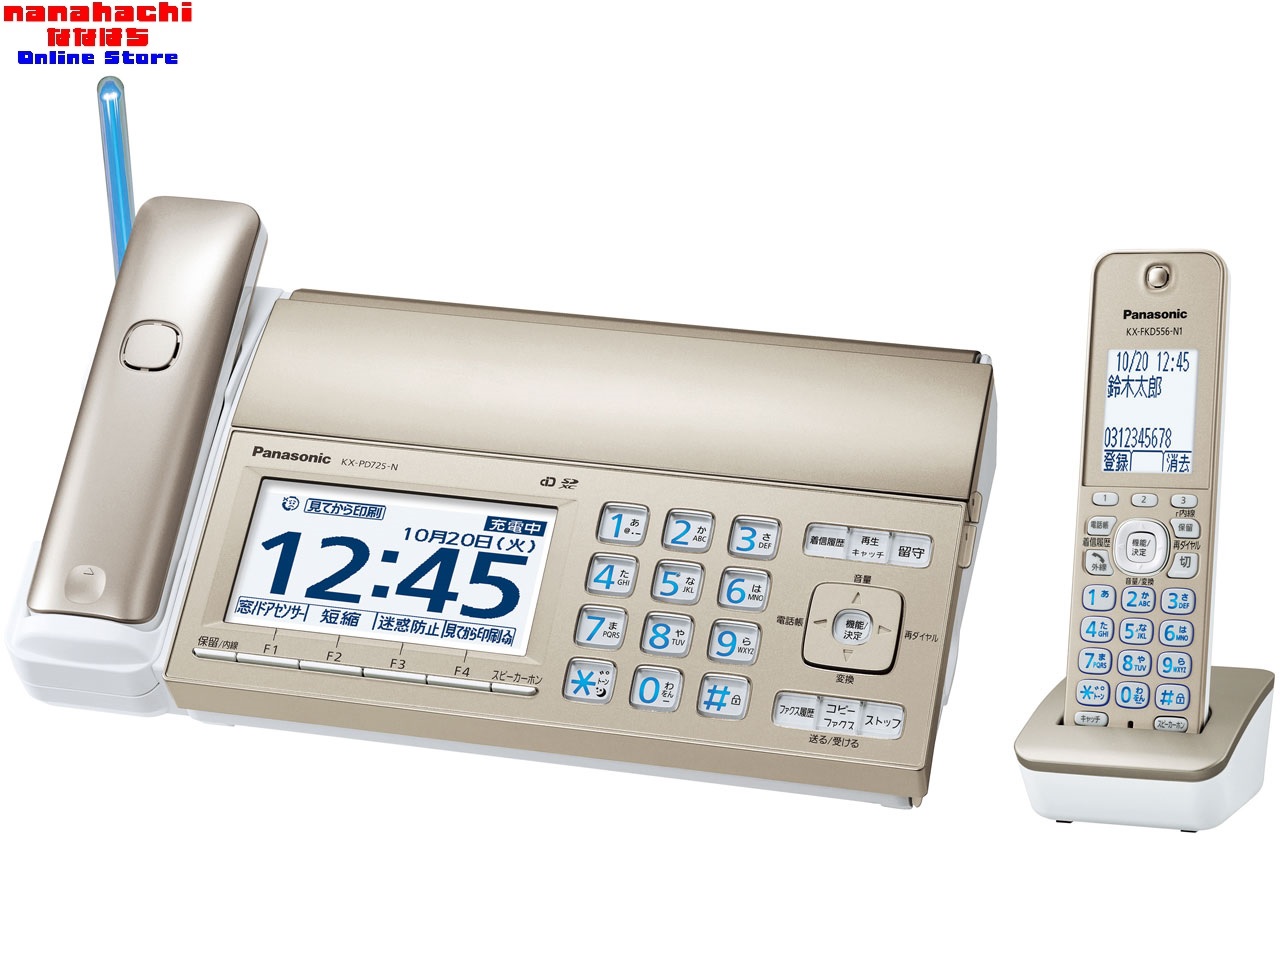 FAX 電話機 新作 人気 おたっくす デジタルコードレス普通紙ファックス パナソニック Panasonic KX-PD725DL-N 北海道 親機の操作ボタンを大きくしたファクス 子機1台付き 送料無料 シャンパンゴールド 毎週更新 沖縄県を除く